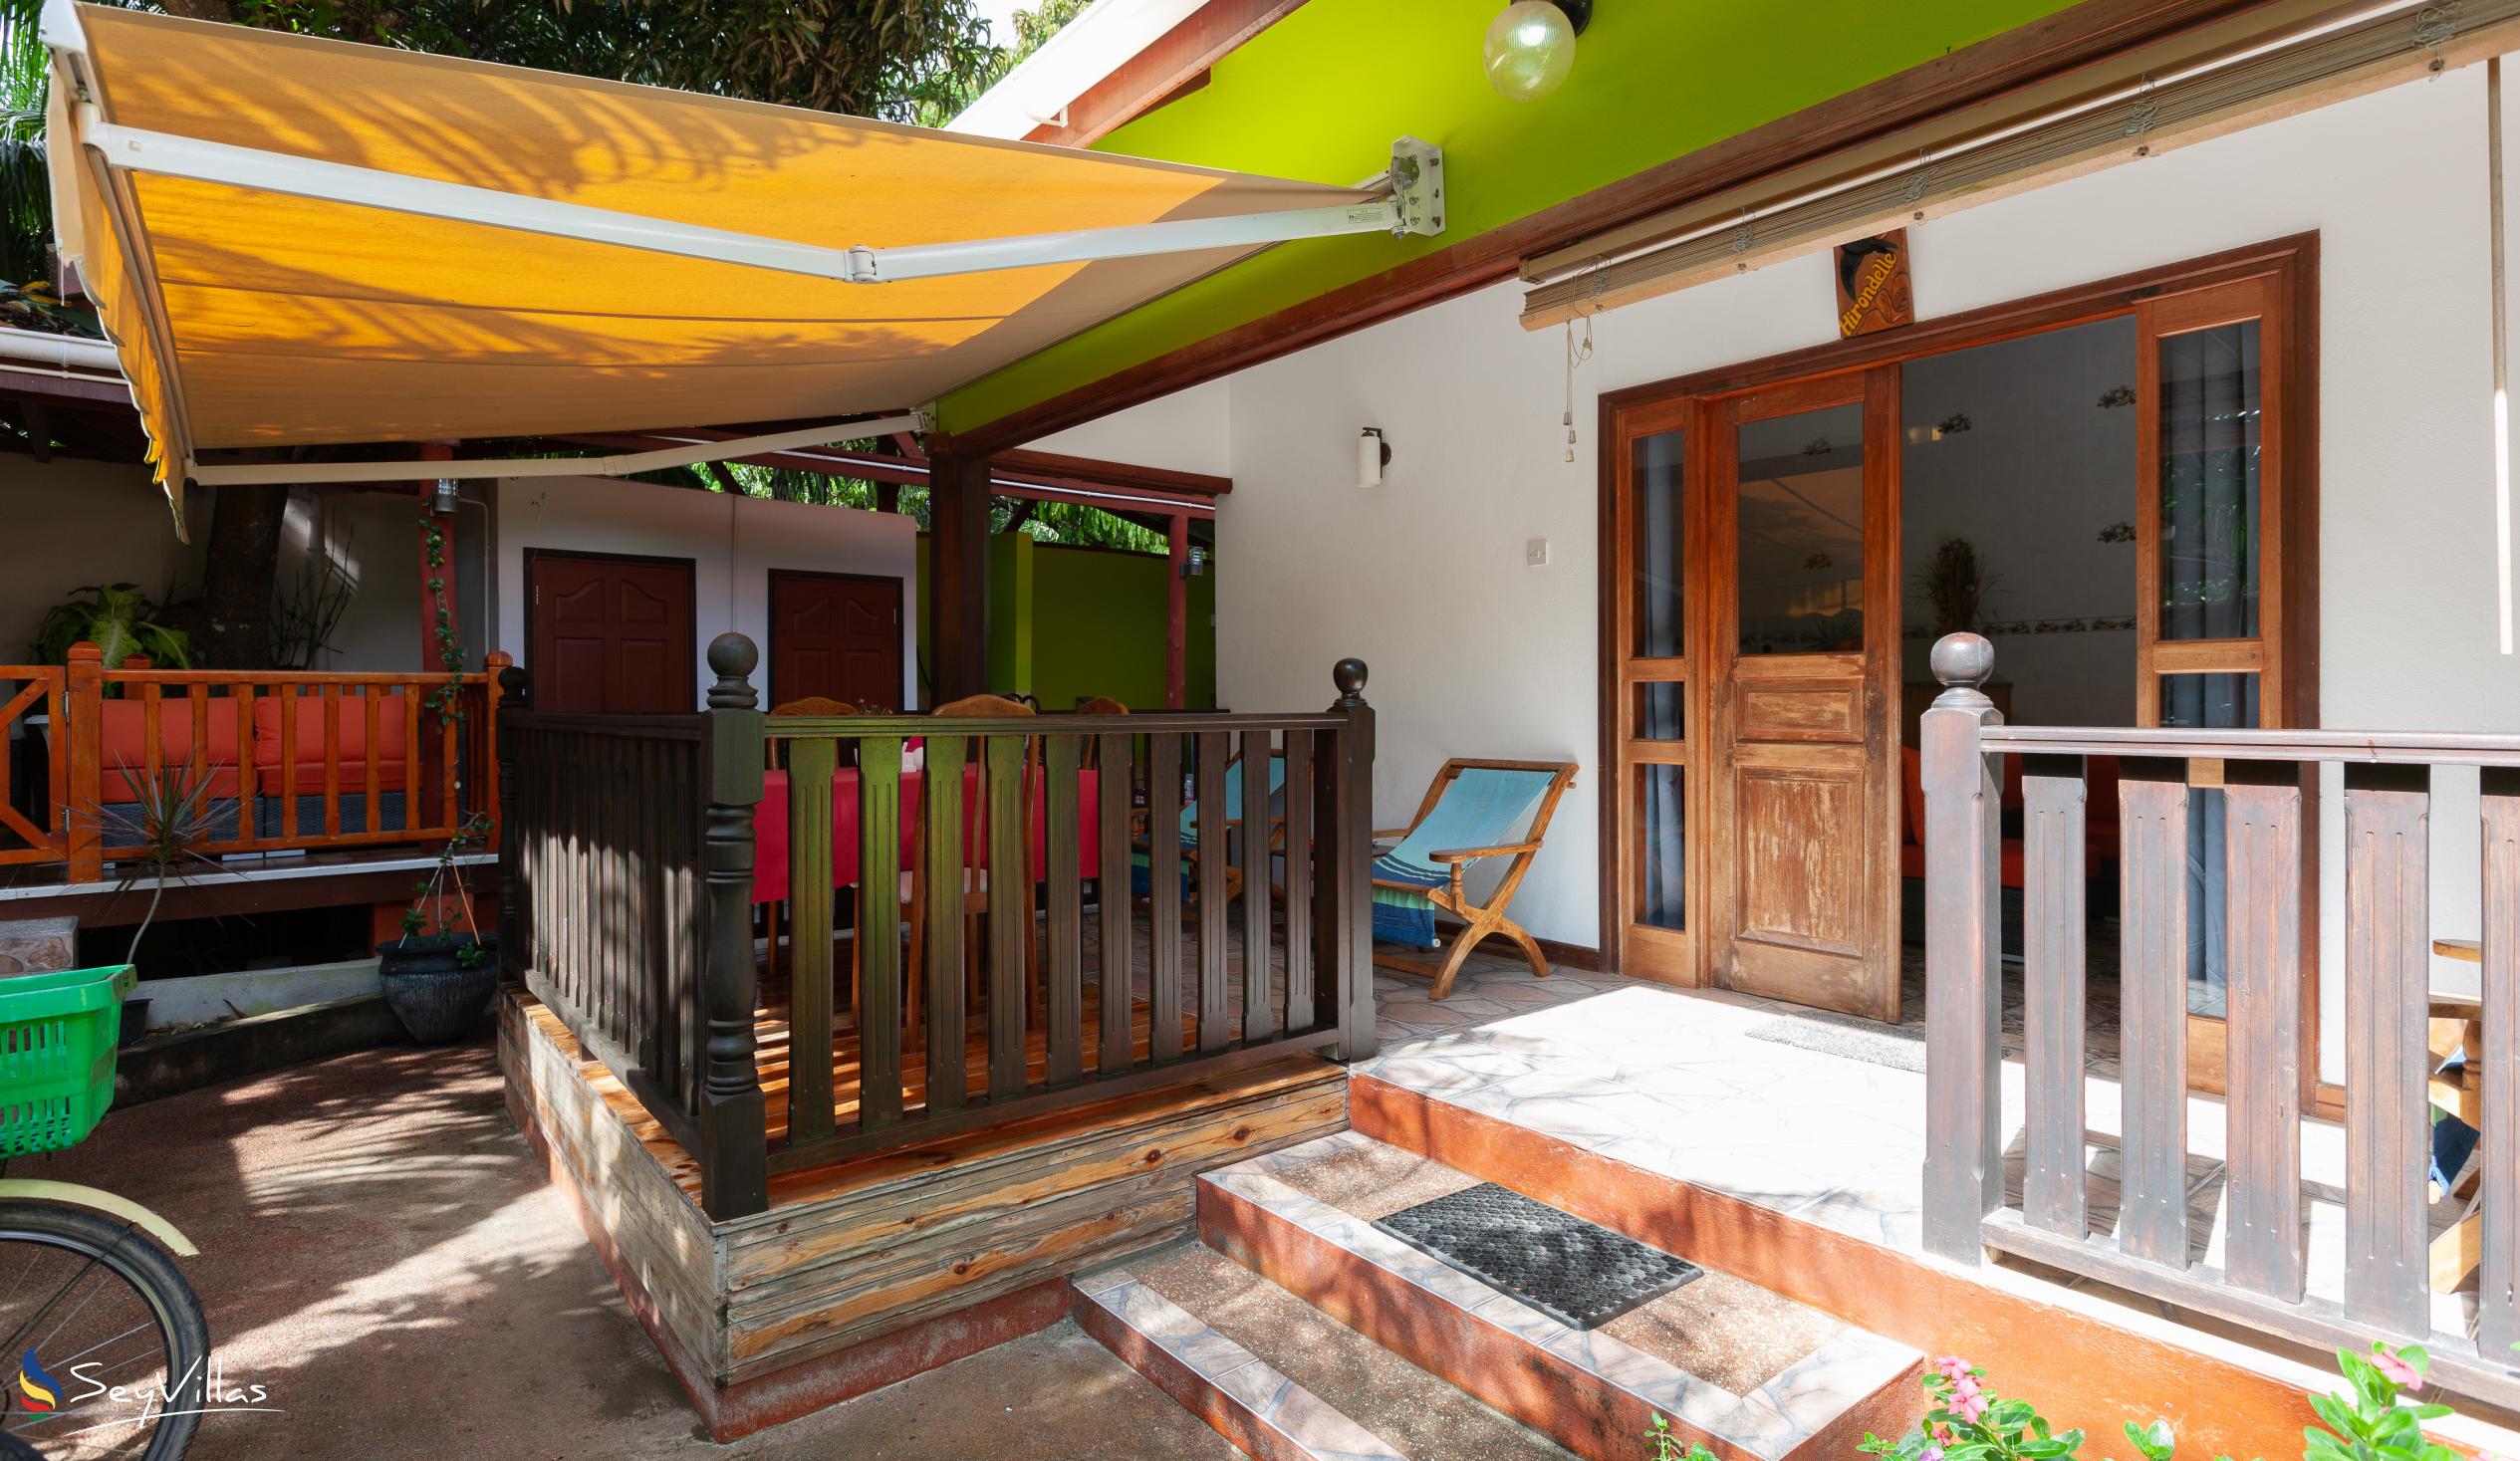 Foto 19: Chloe's Cottage - Extérieur - La Digue (Seychelles)